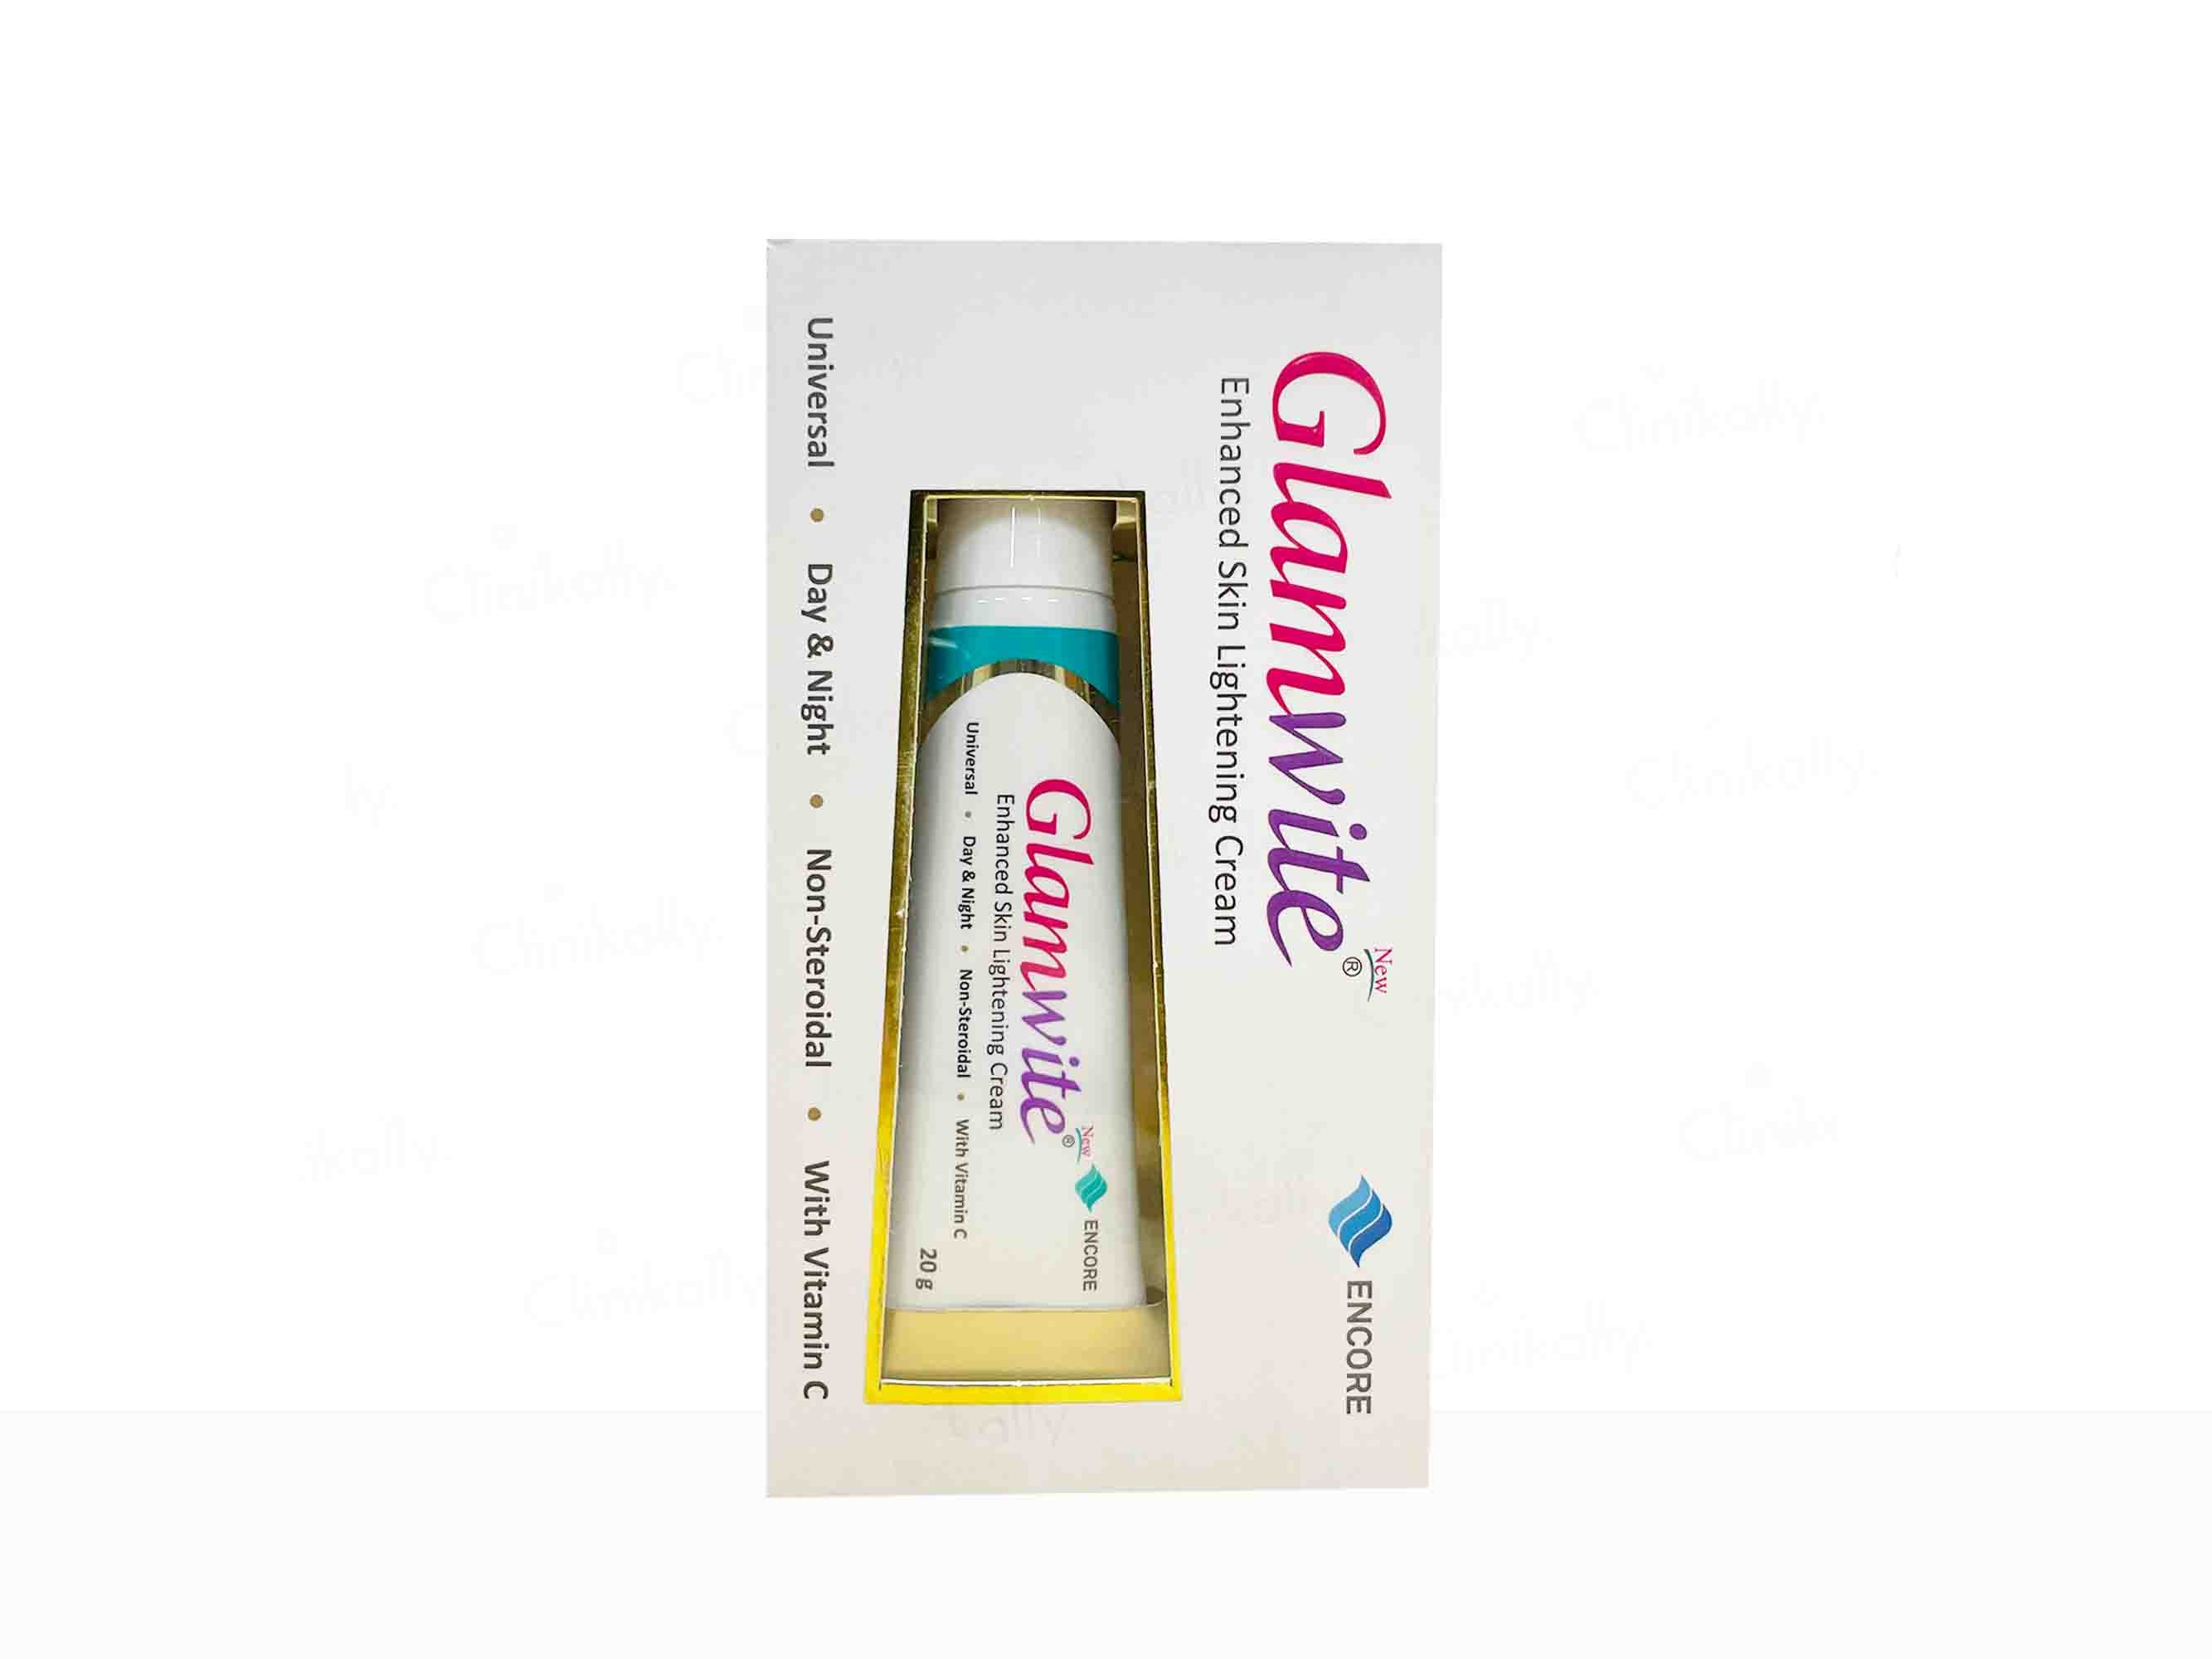 Glamwite Enhanced Skin Lightening Cream